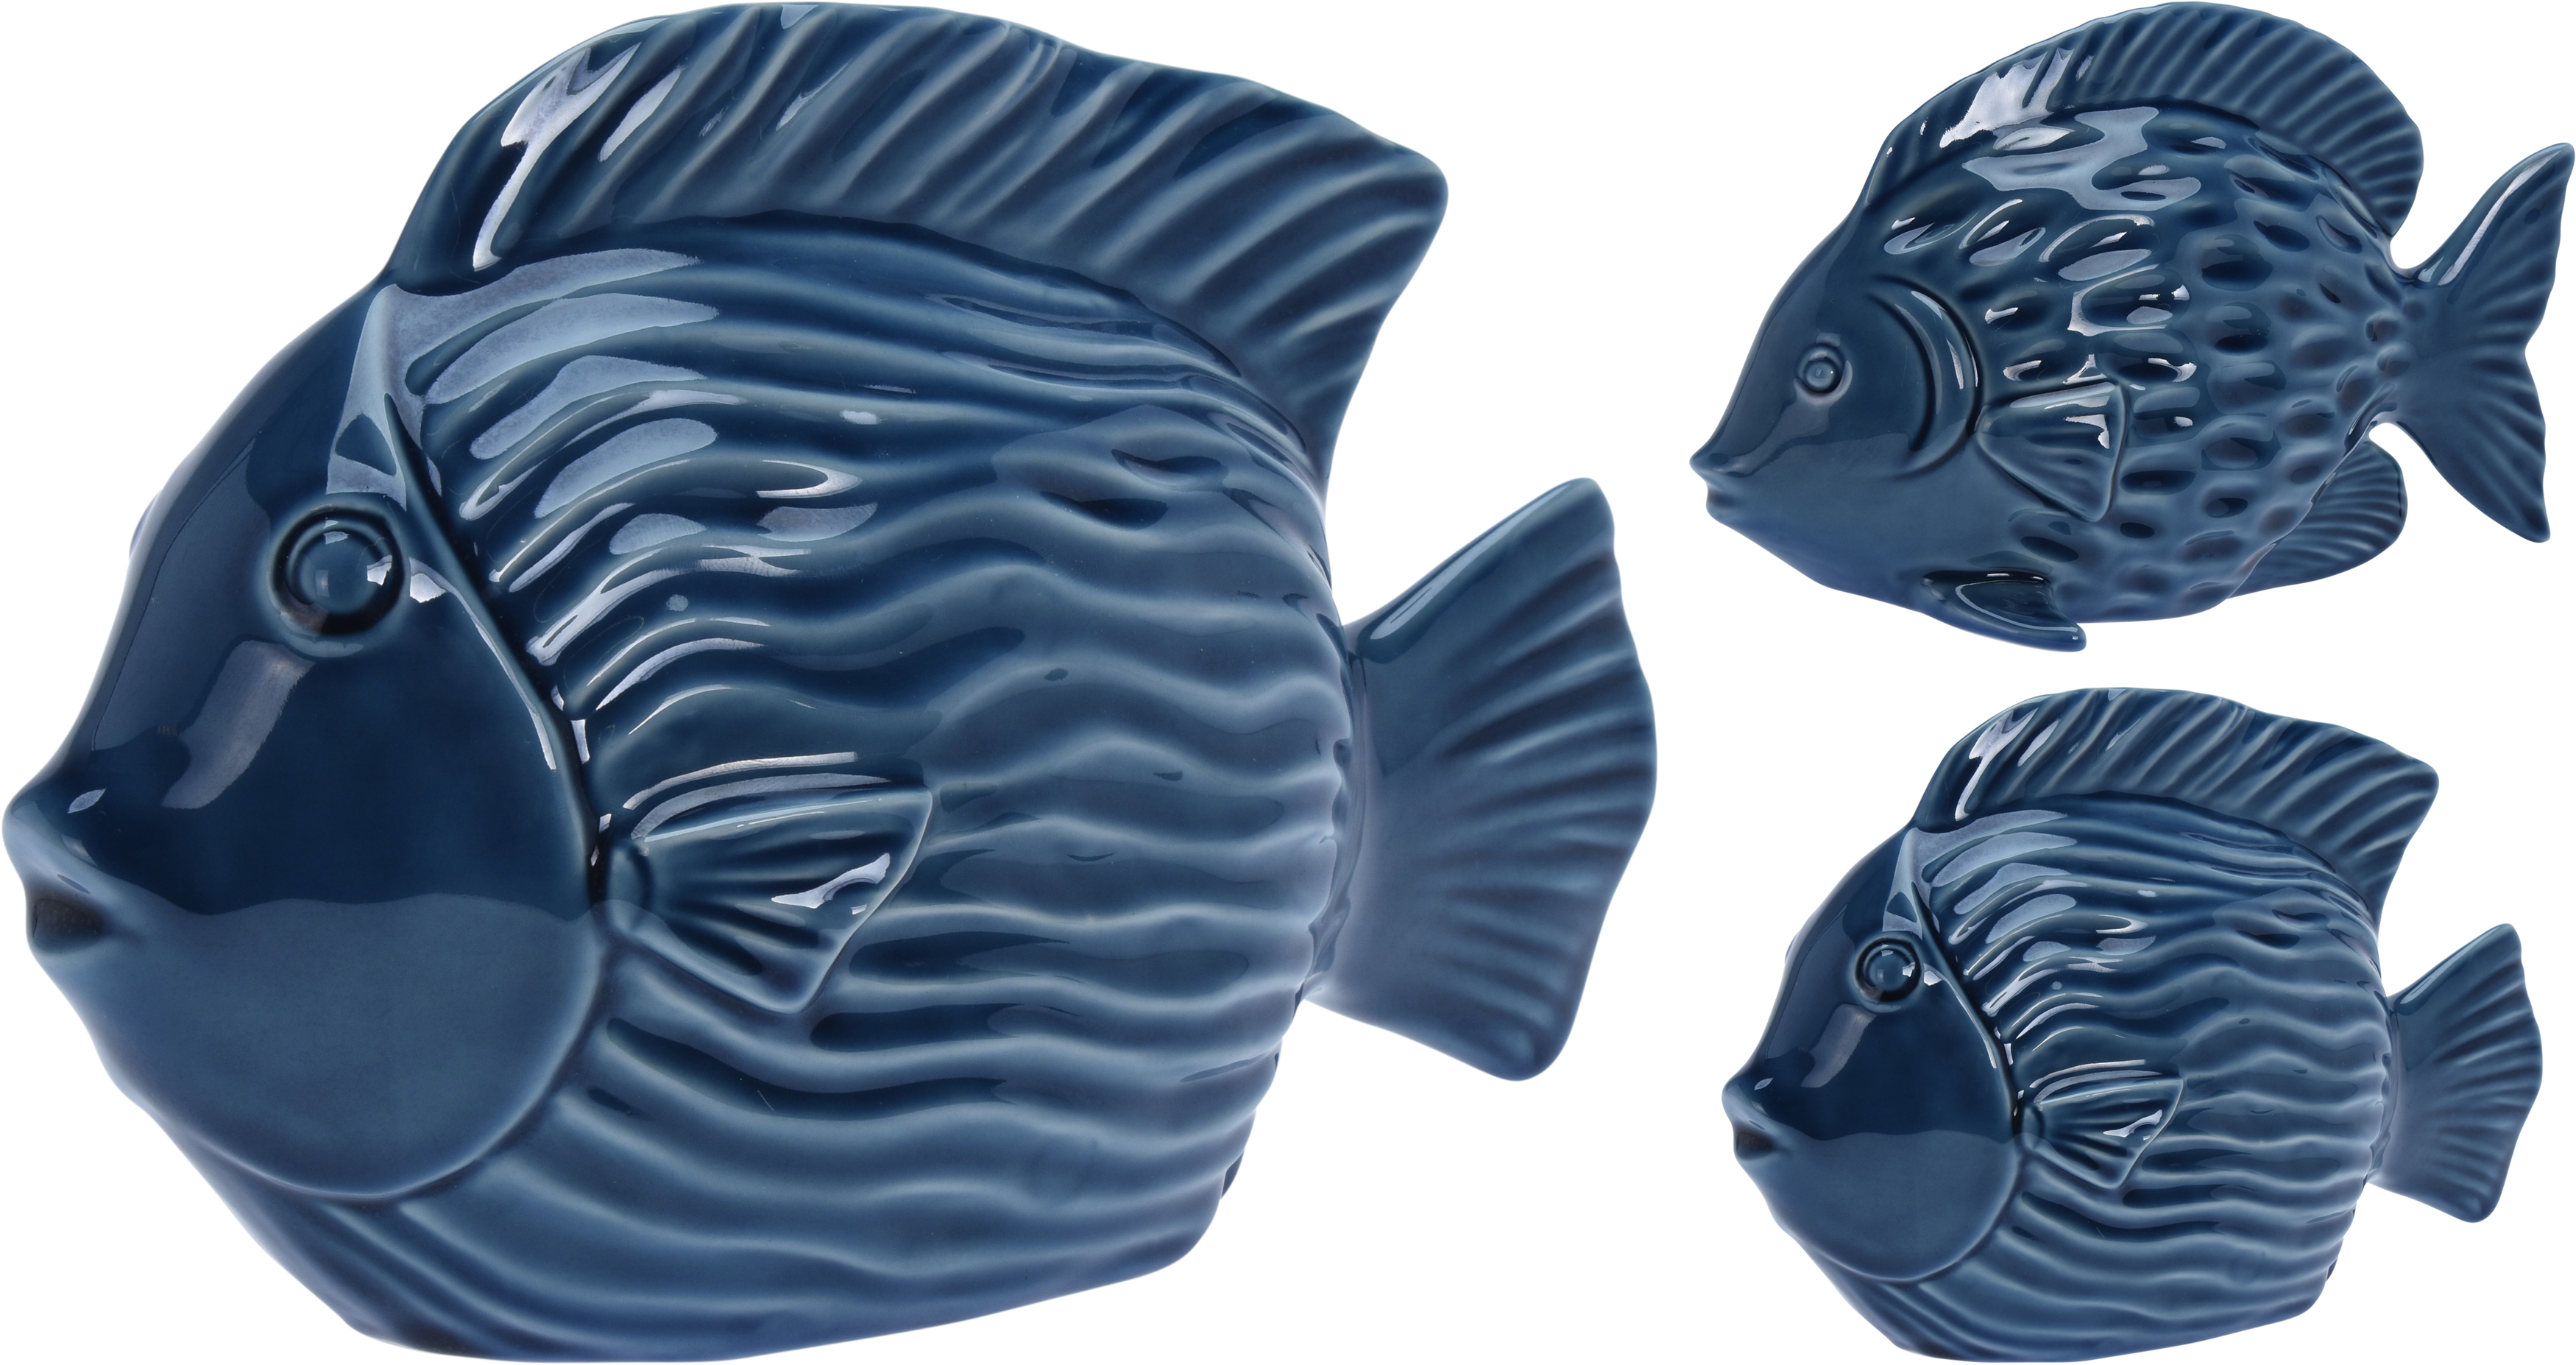 Fisch ANTON Keramik blau glänzend 16cm